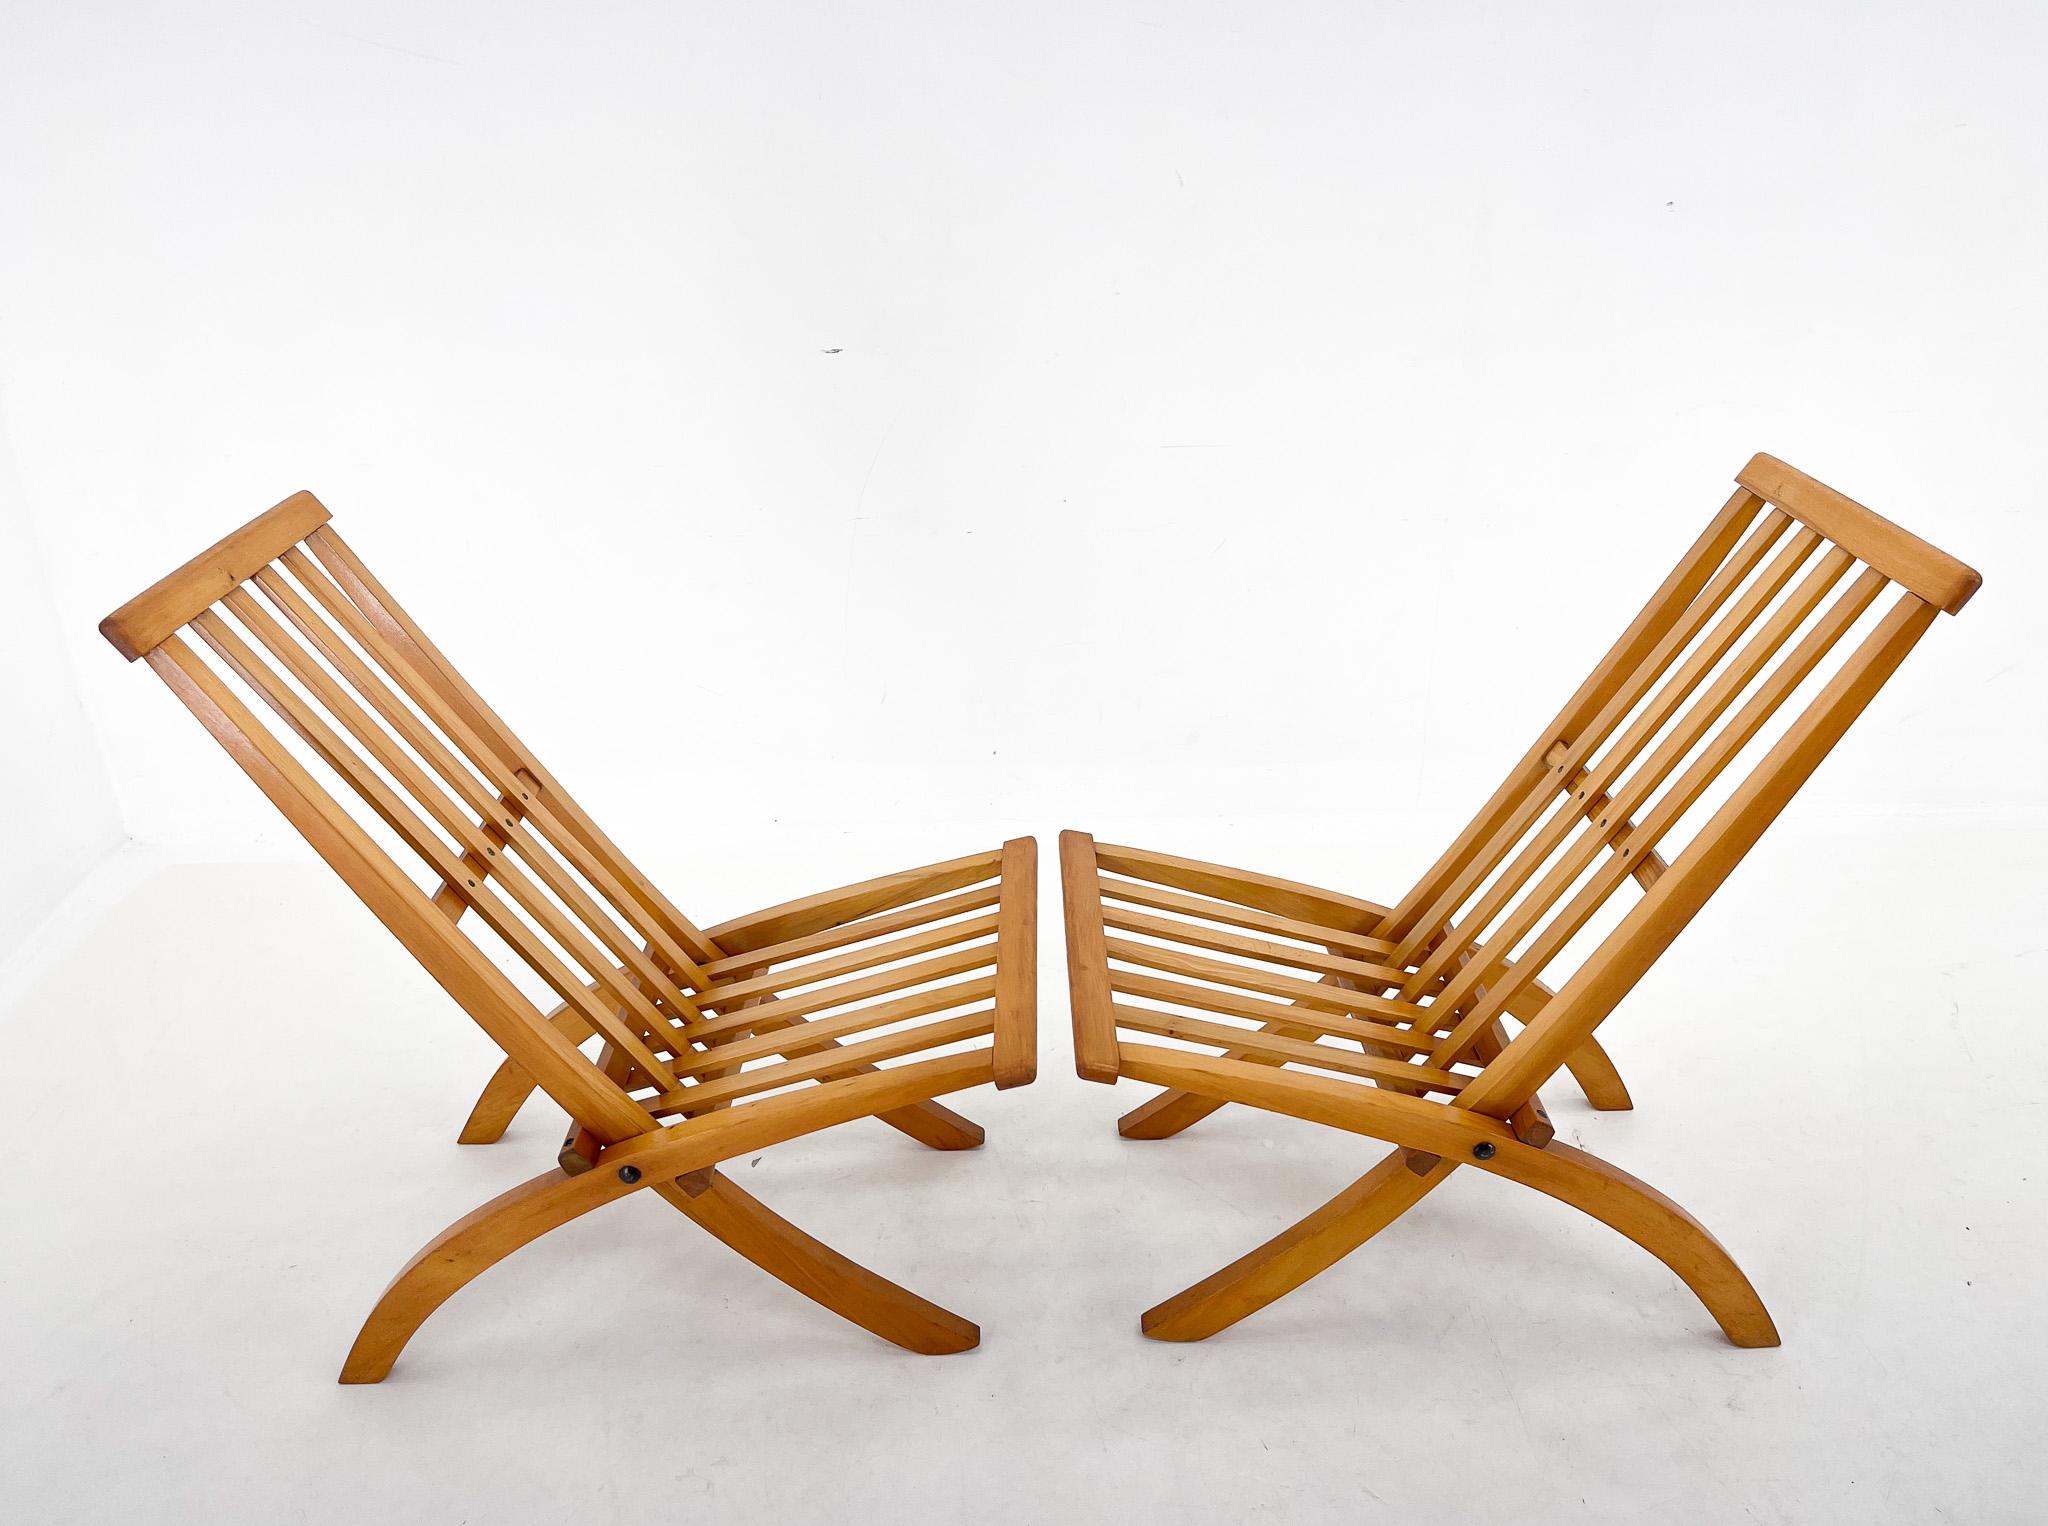 Set aus zwei klappbaren Stühlen aus Buchenholz. Die Stühle wurden in der ersten Hälfte des 20. Jahrhunderts von dem Architekten Ott Rothmayer entworfen.
